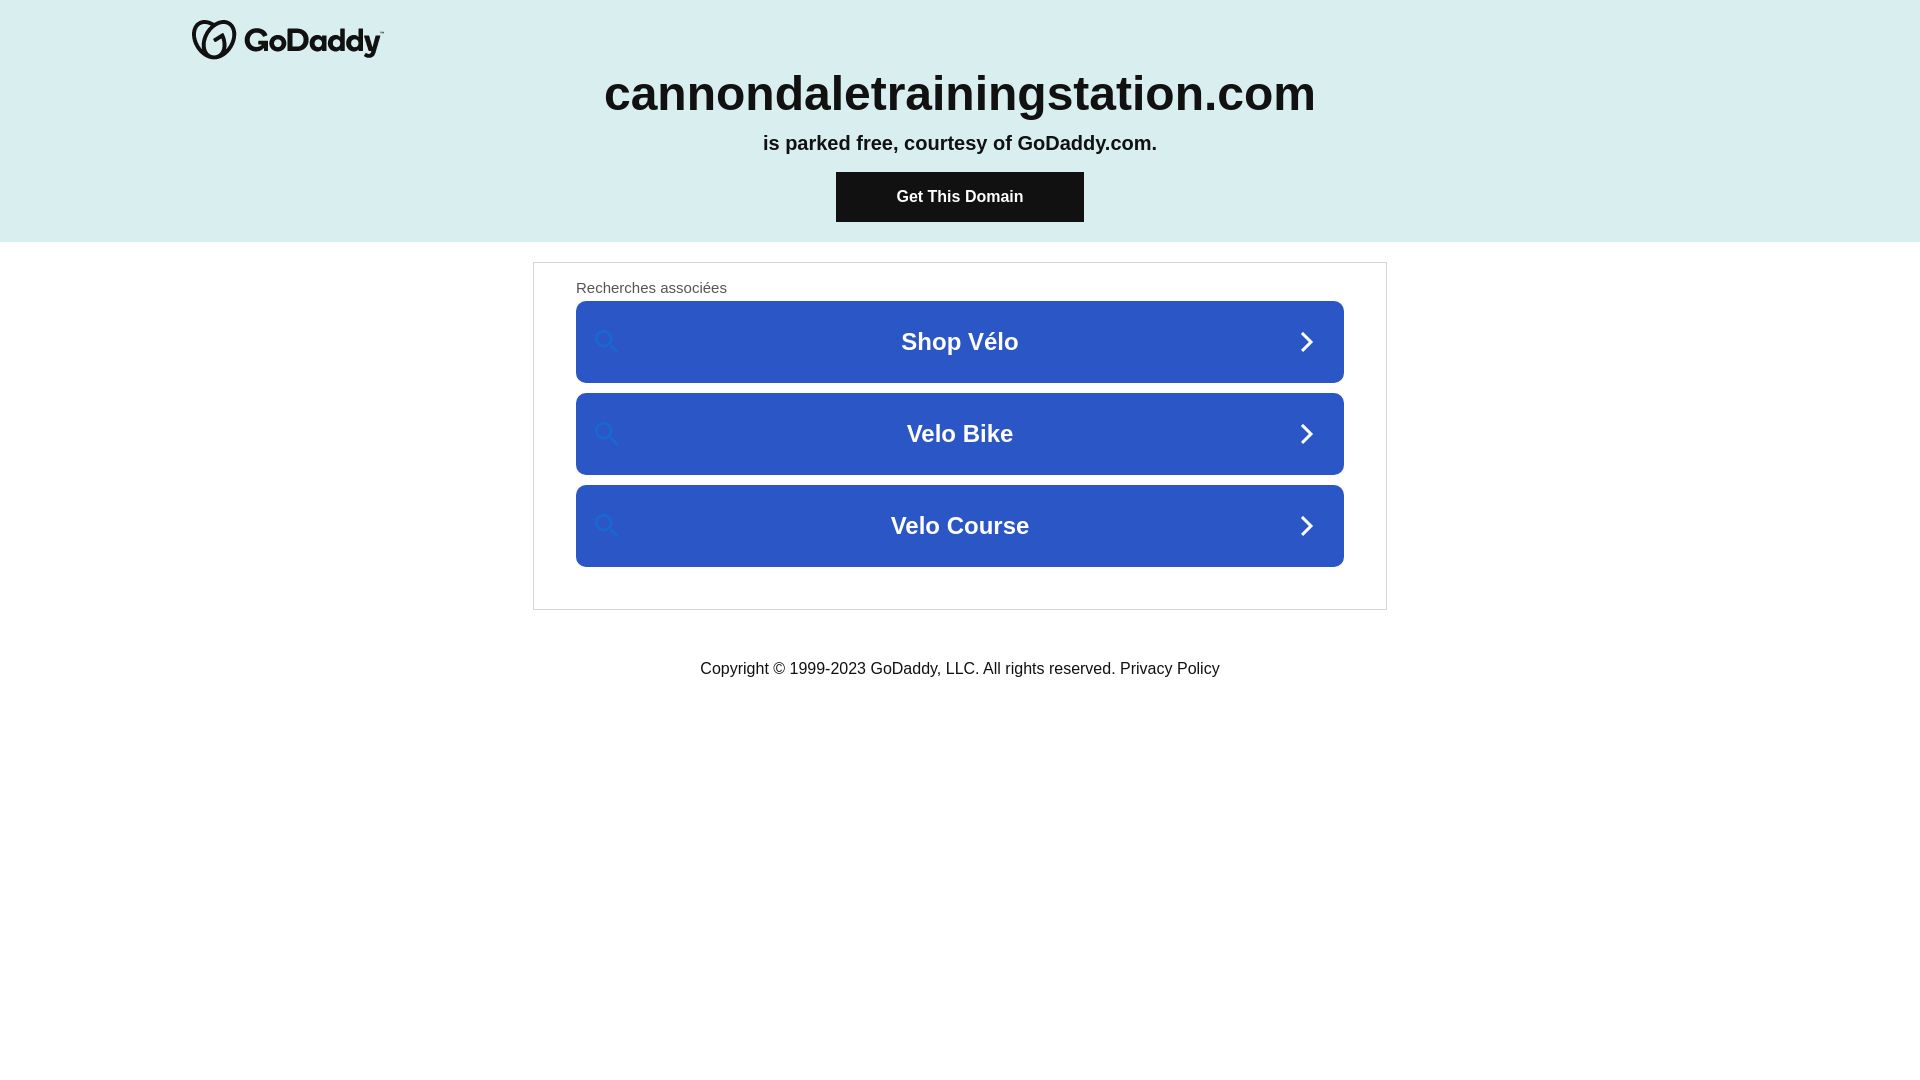 Estado web cannondaletrainingstation.com está   ONLINE